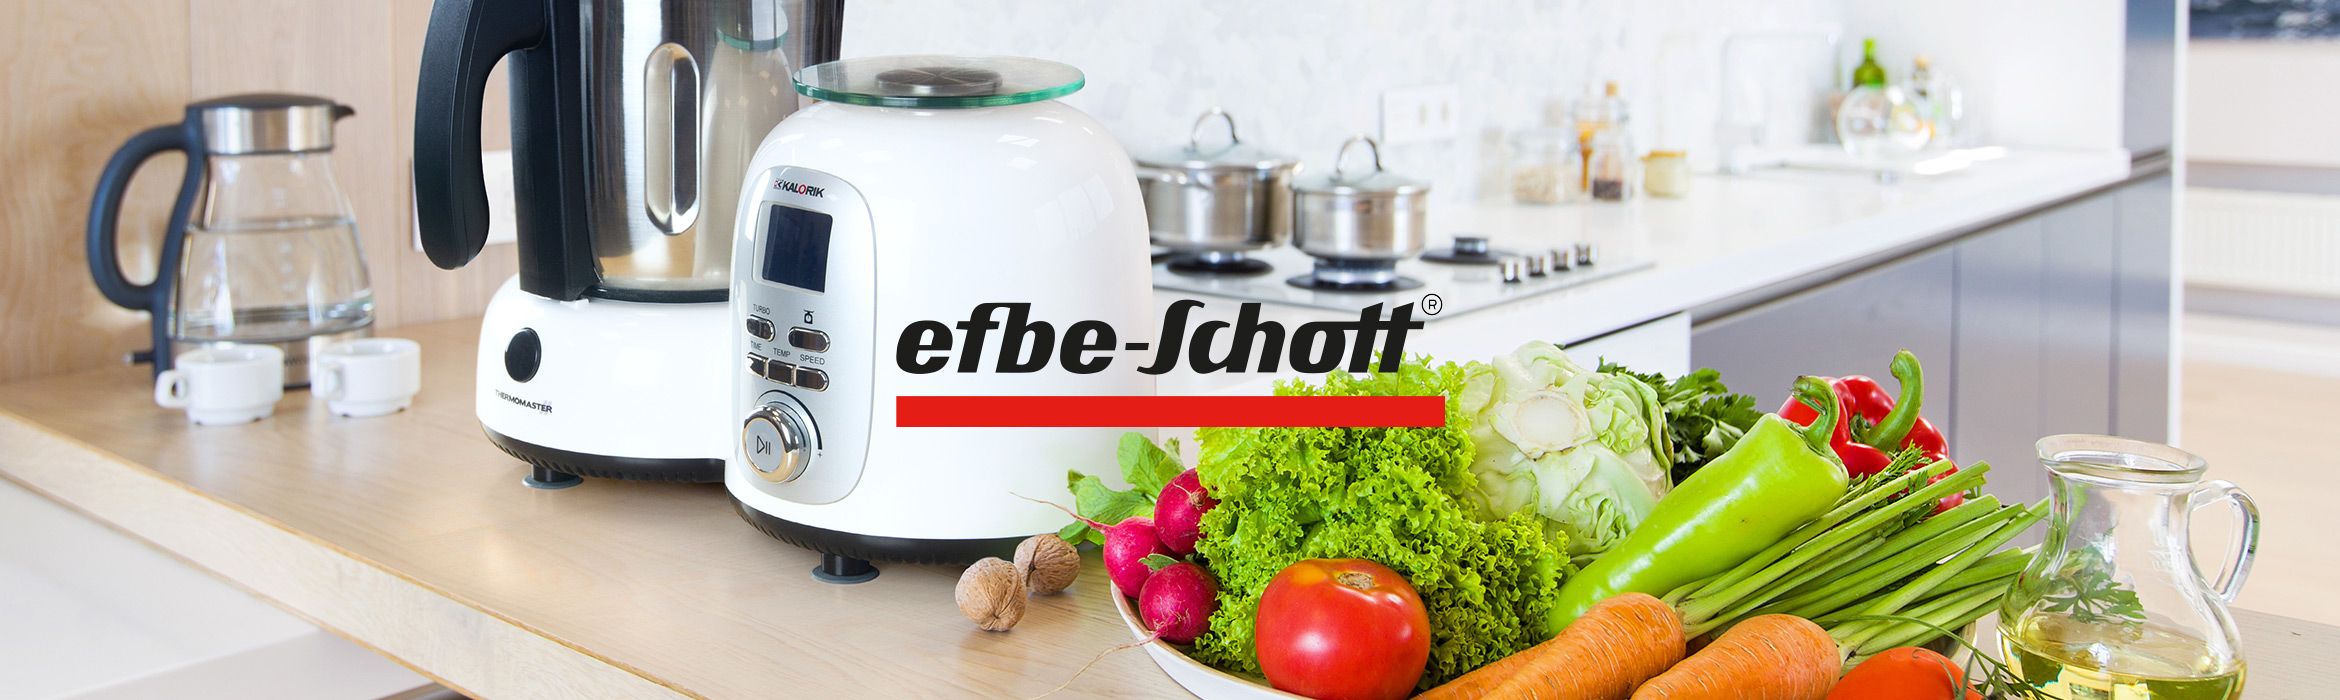 EFBE-SCHOTT® Küchengeräte